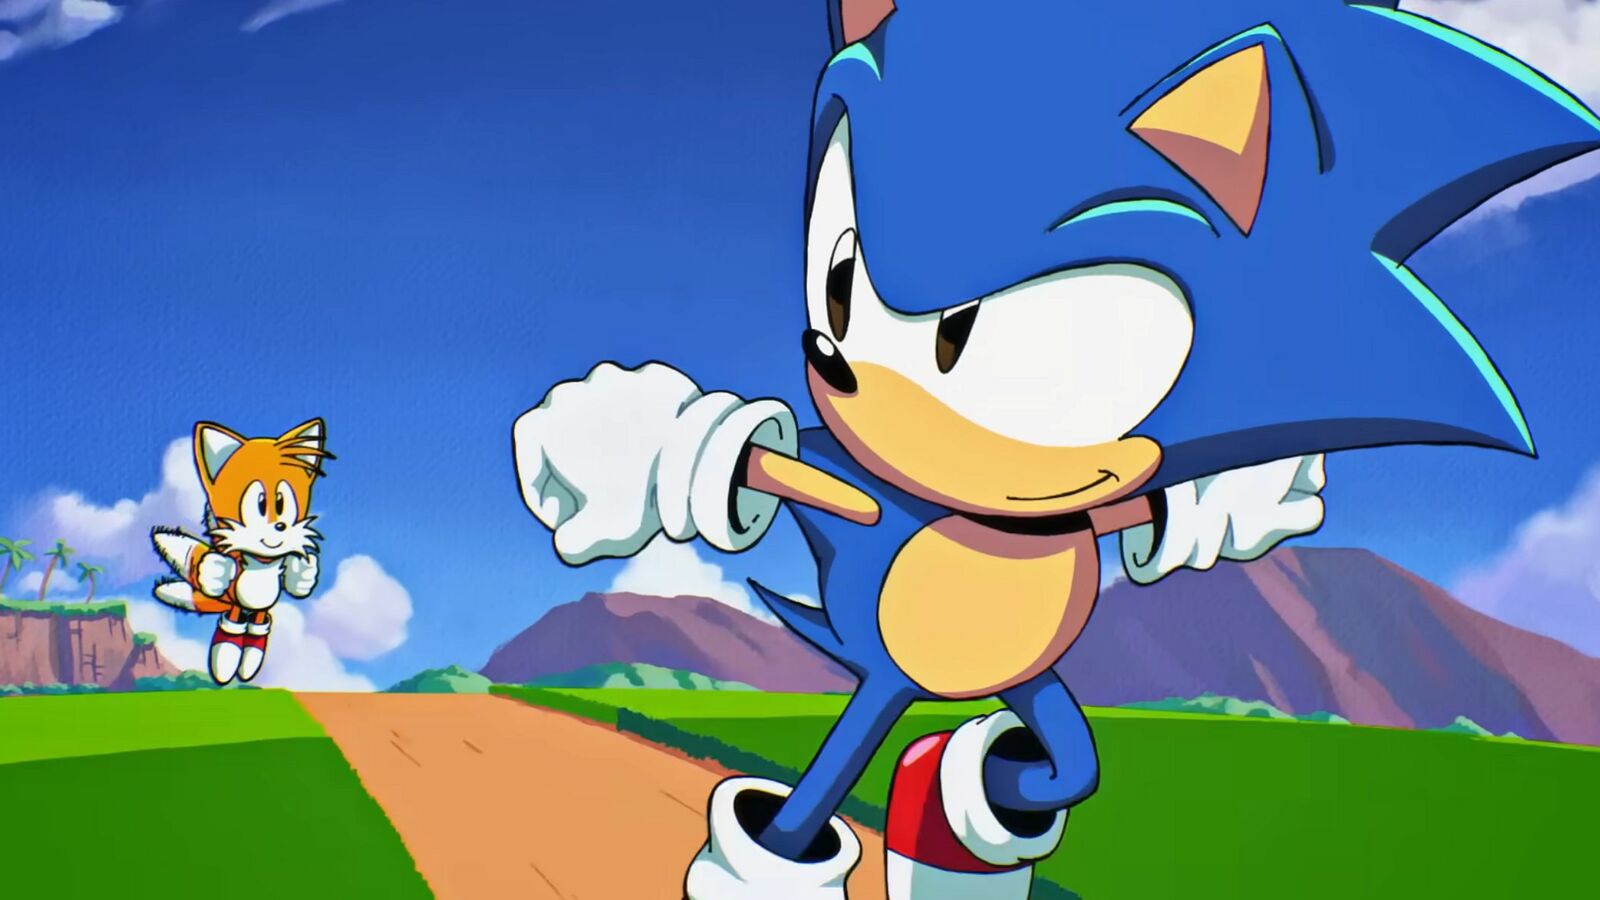 Sonic Origins: Produto final desagrada desenvolvedor - Folha do Uberaba